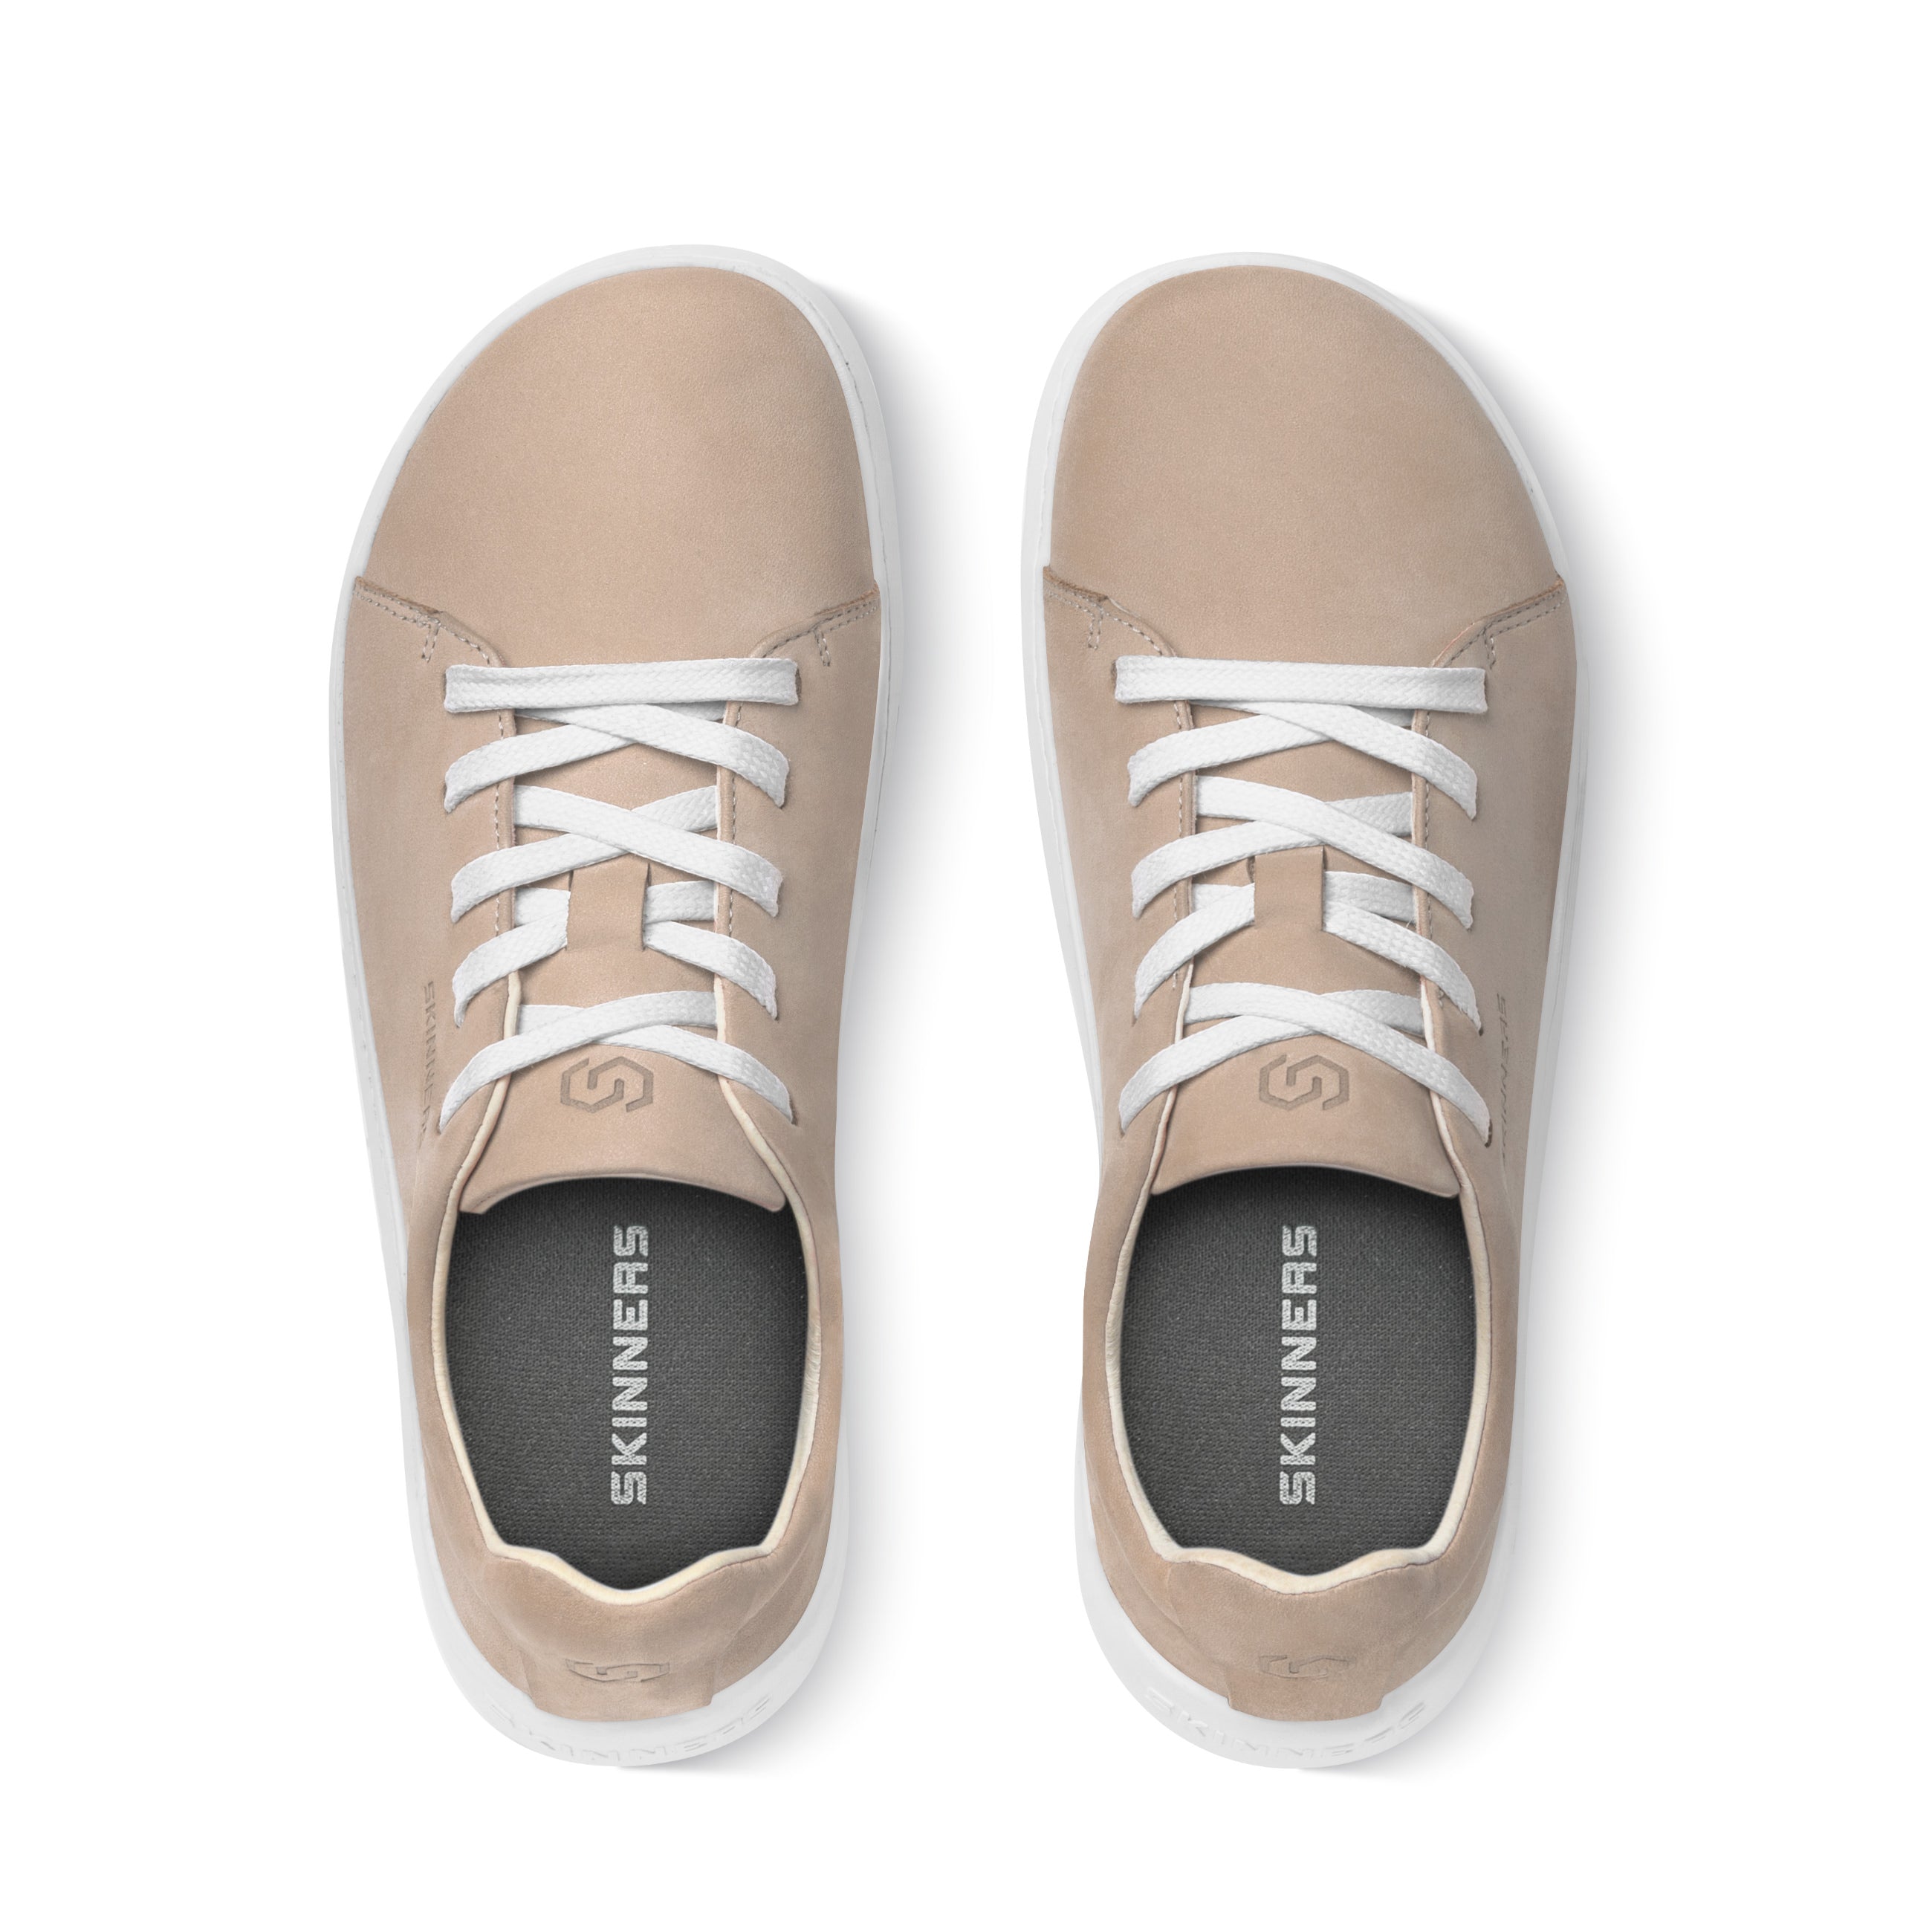 Mærkbare Walker barfods sneakers til kvinder og mænd i farven beige / white, top